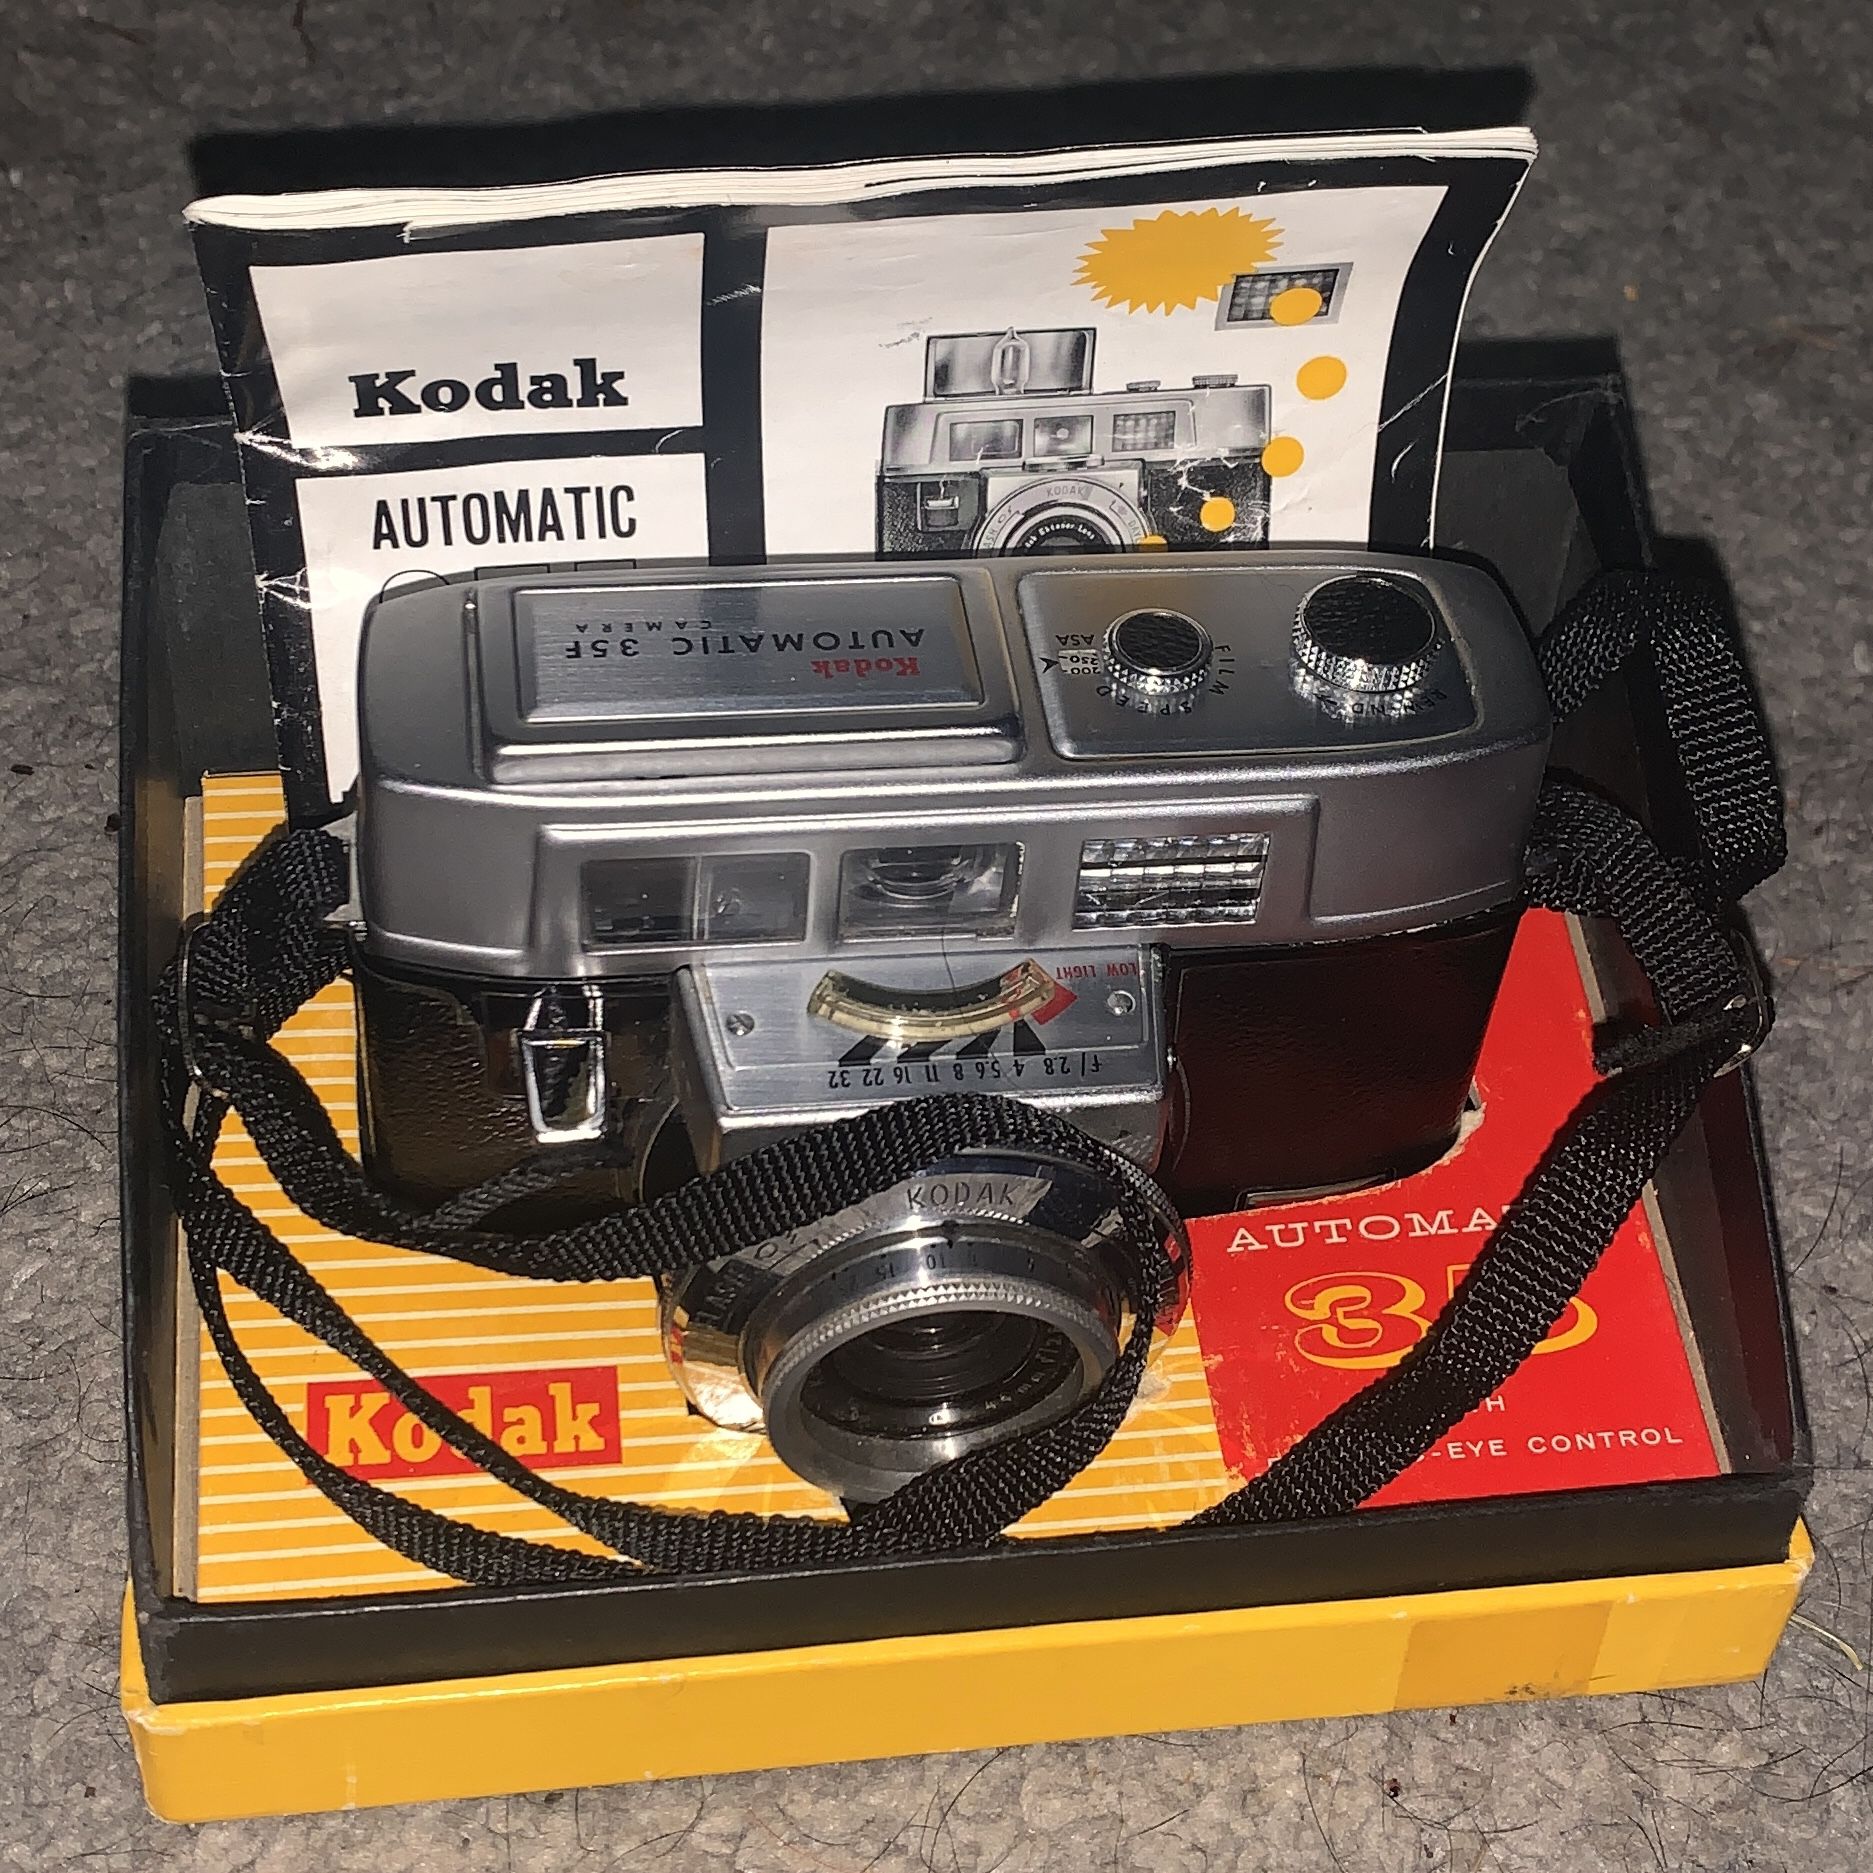 Kodak Automatic 35mm